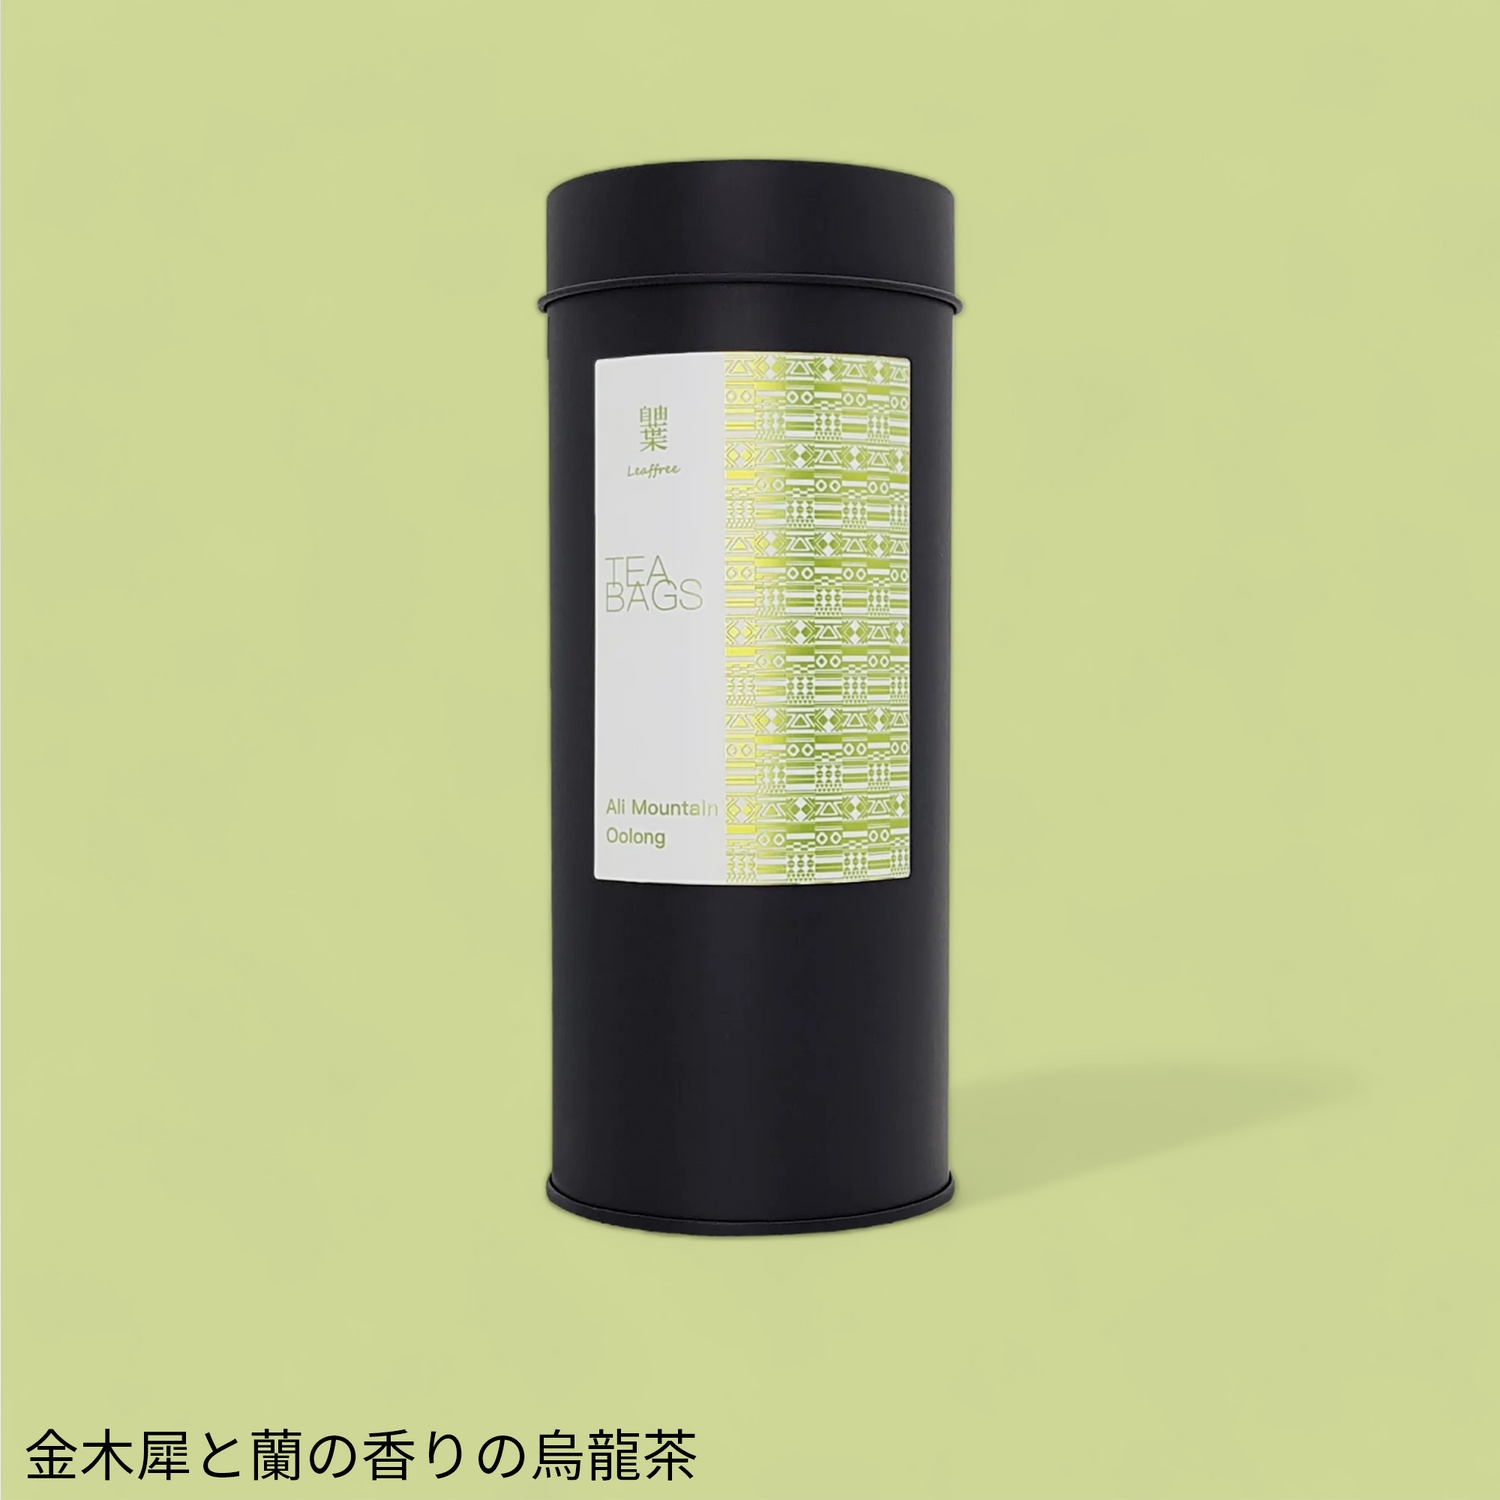 ルモーメント】高級台湾茶ギフト 烏龍茶3缶ティーバッグセット(20